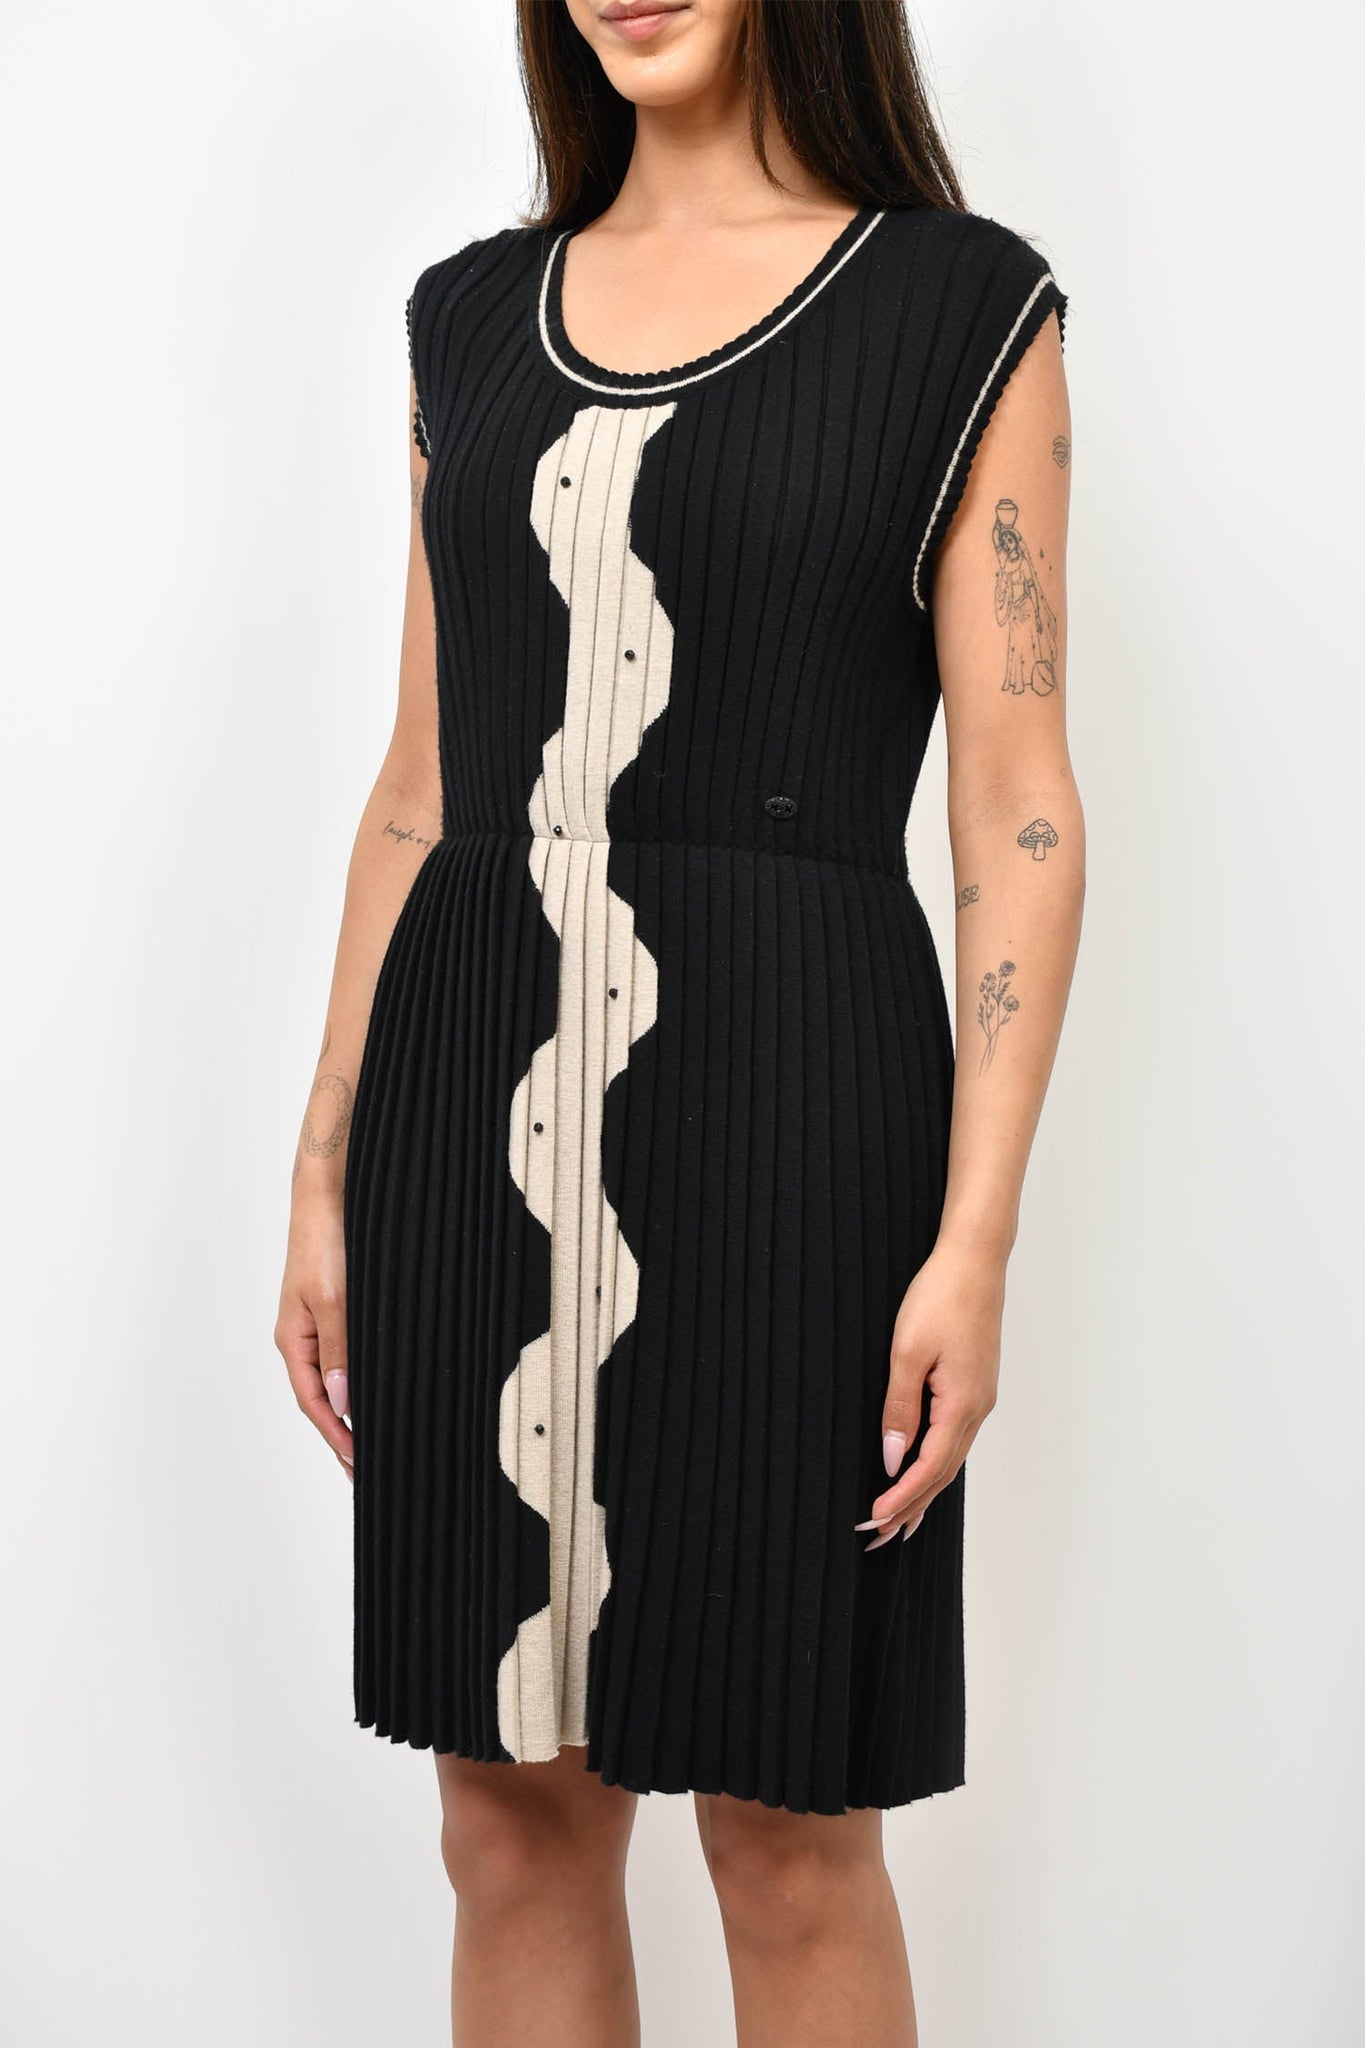 Pre-loved Chanel™ Fall 2007 Black/Beige Wool Knit Sleeveless Dress Size 40